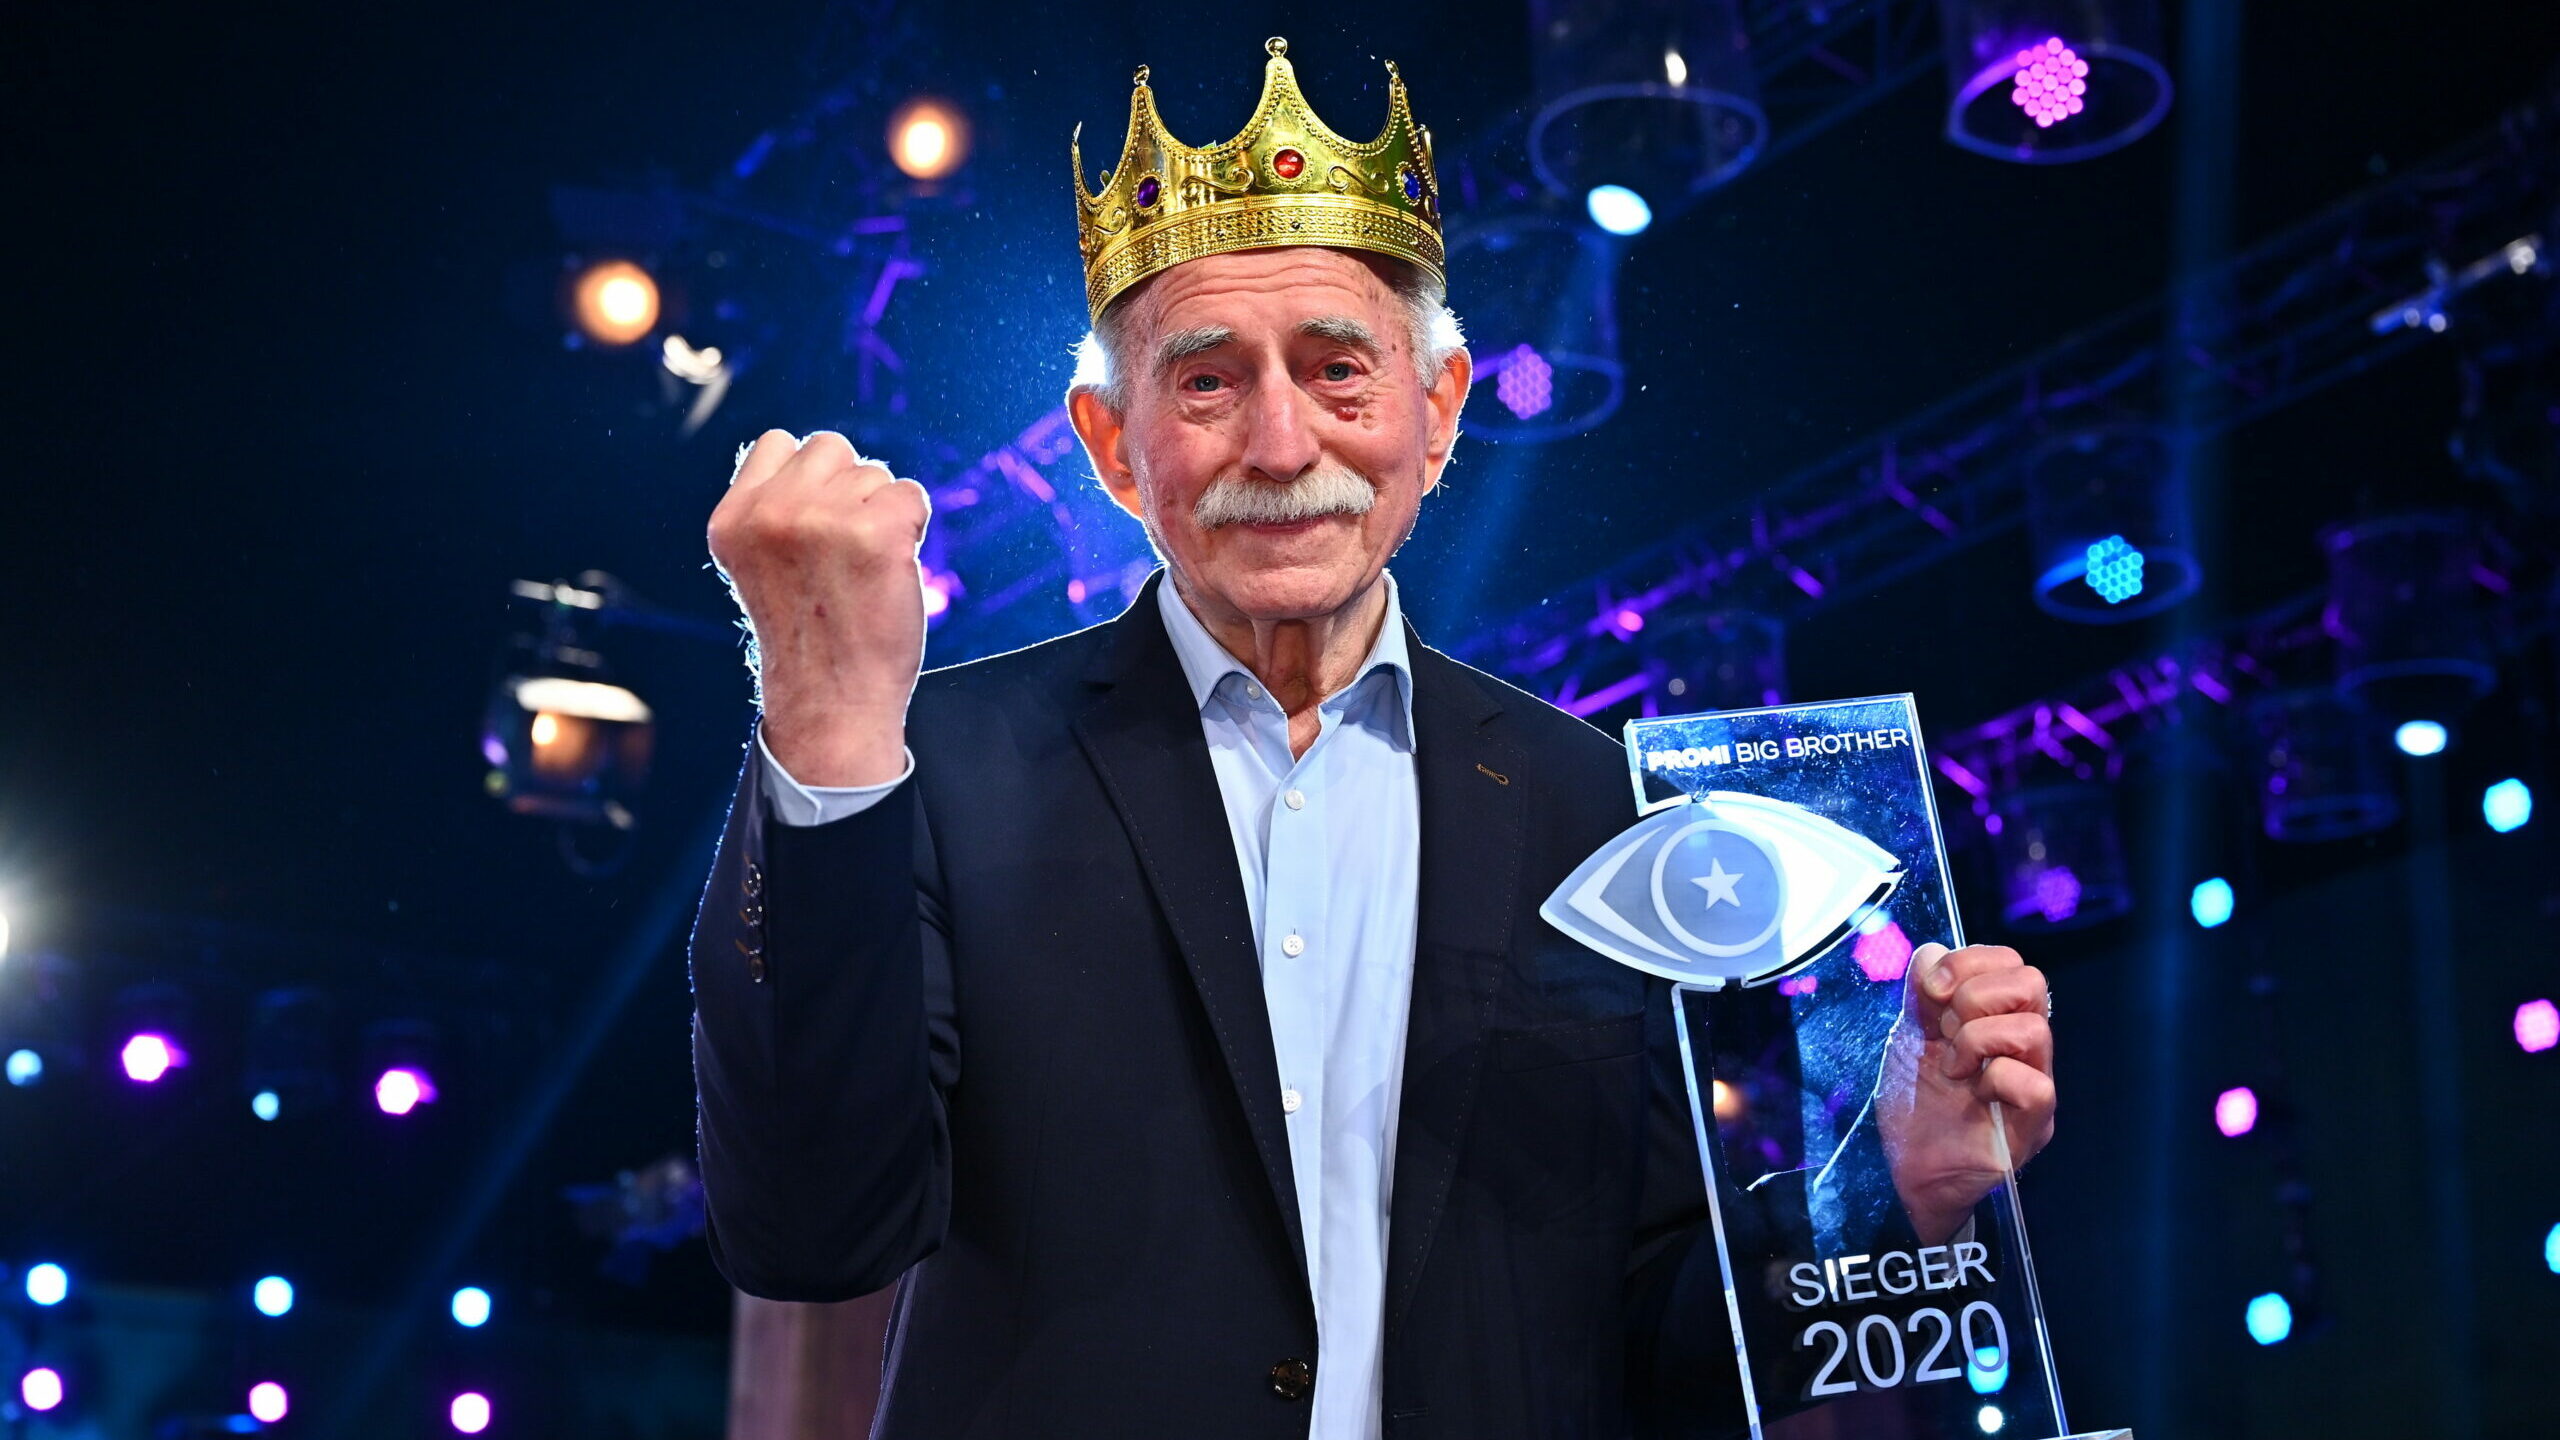 Promi Big Brother 2020 Gewinner: Werner Hansch ist der Sieger von Staffel 8 4